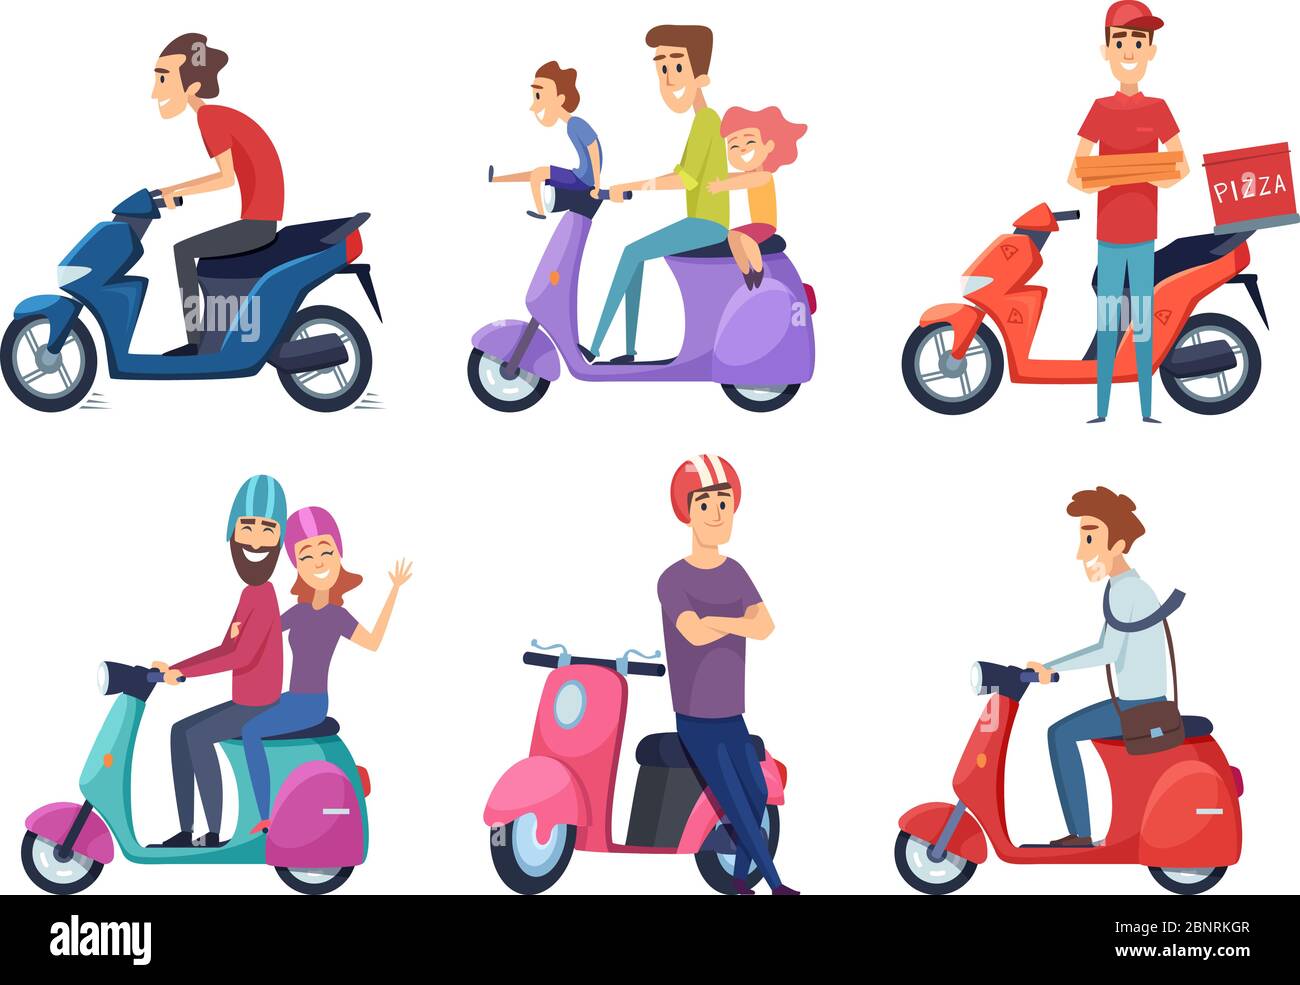 Mann fährt Motorrad. Schnelle Fahrrad Roller für die Lieferung Pizza oder Lebensmittel Reisende paar fahren Moped Vektor-Bilder Stock Vektor